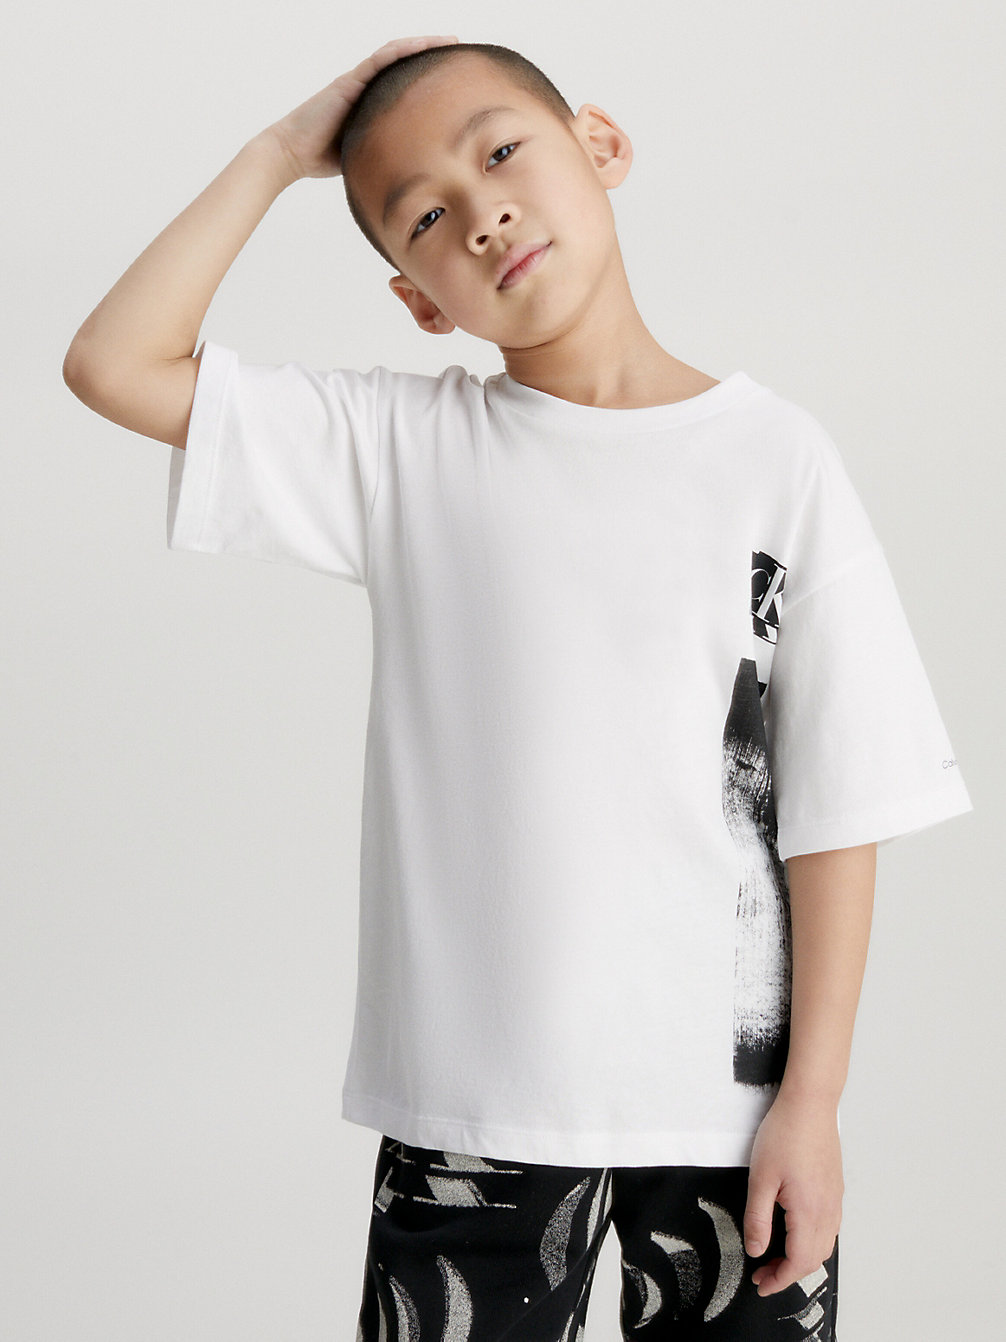 T-Shirt Con Grafica Glitch Taglio Relaxed > BRIGHT WHITE > undefined bambino > Calvin Klein